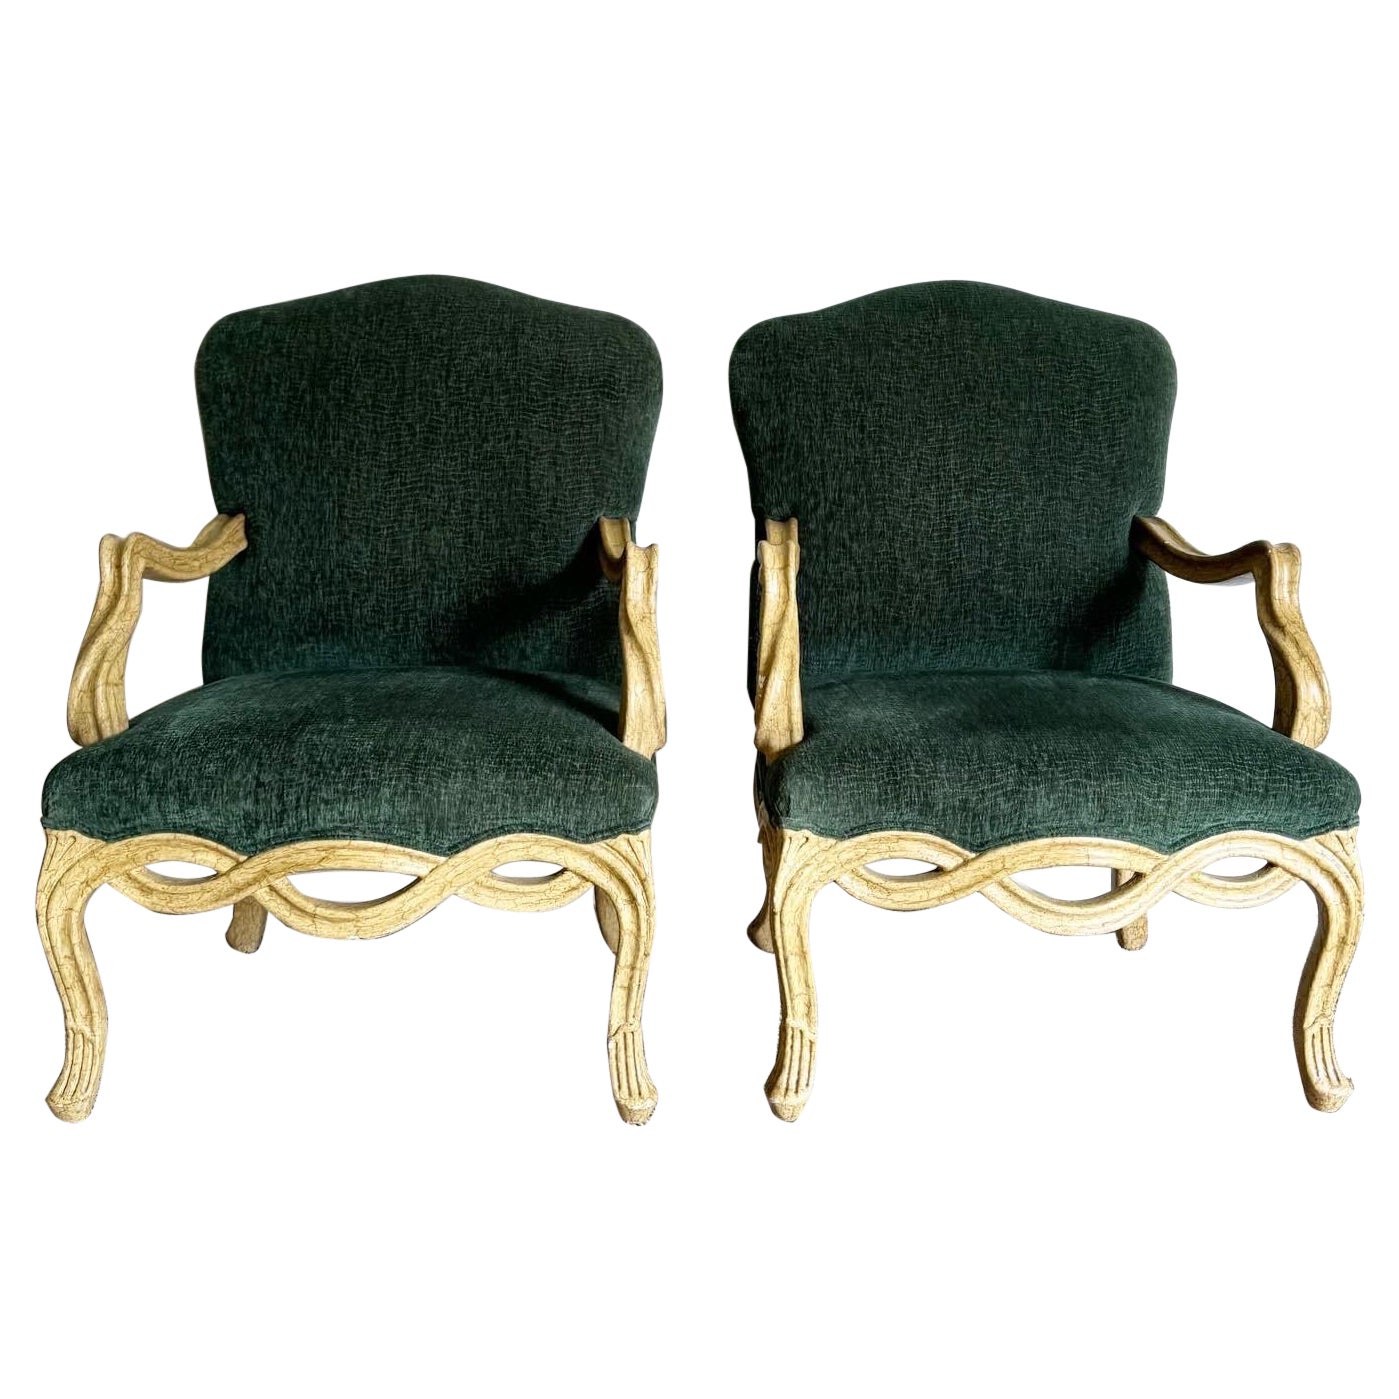 Paire de chaises à accoudoirs en bois torsadé, de style provincial français, de couleur verte